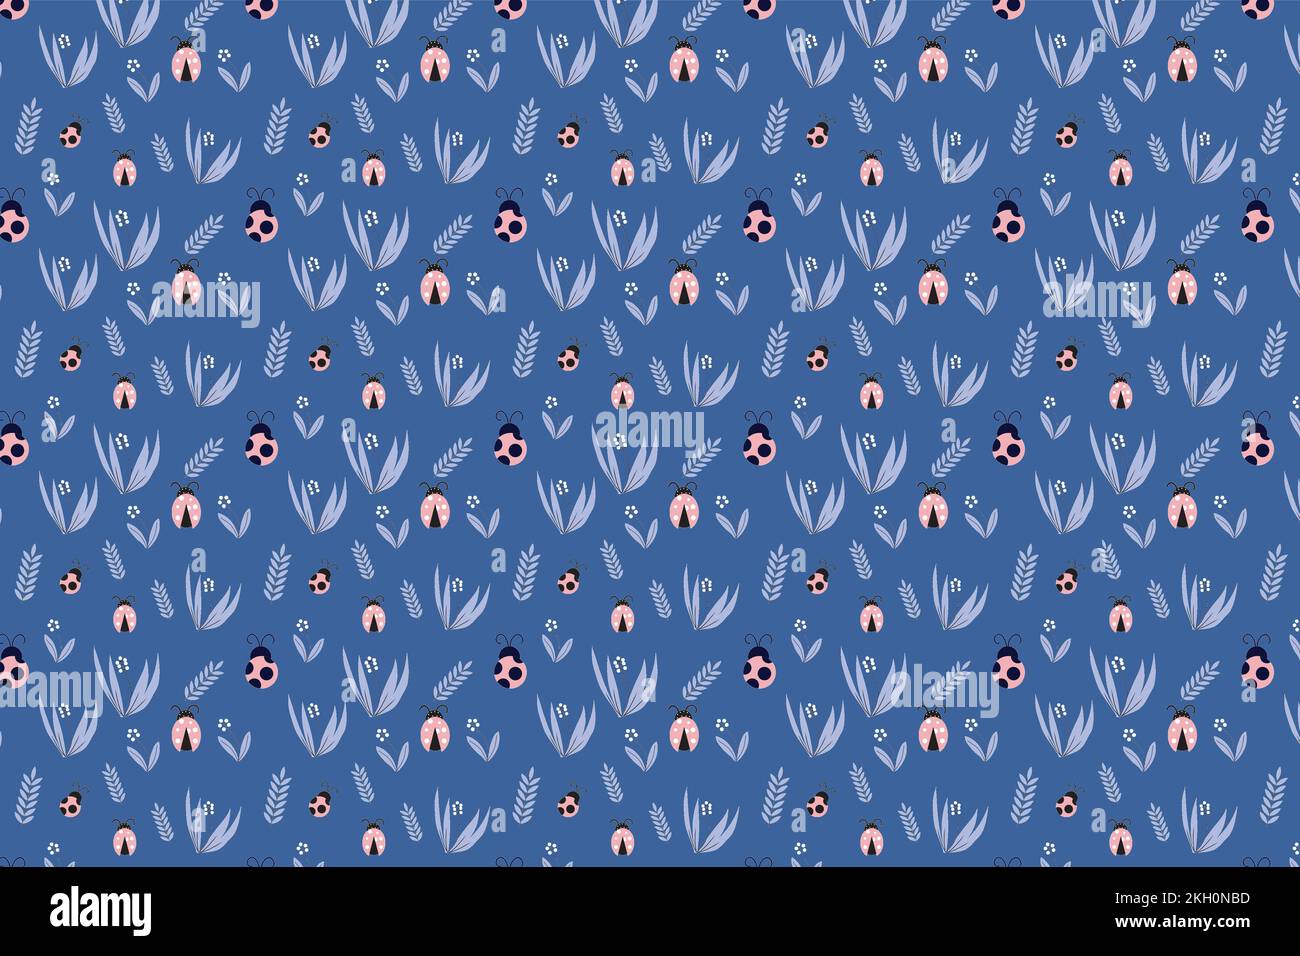 Nahtlose Marienkäfer-Dekoration mit Insekten und Blumensymbolen. Endloses Blumenmuster auf blauem Hintergrund. Abstrakte Insekten Mustervektor Stock Vektor